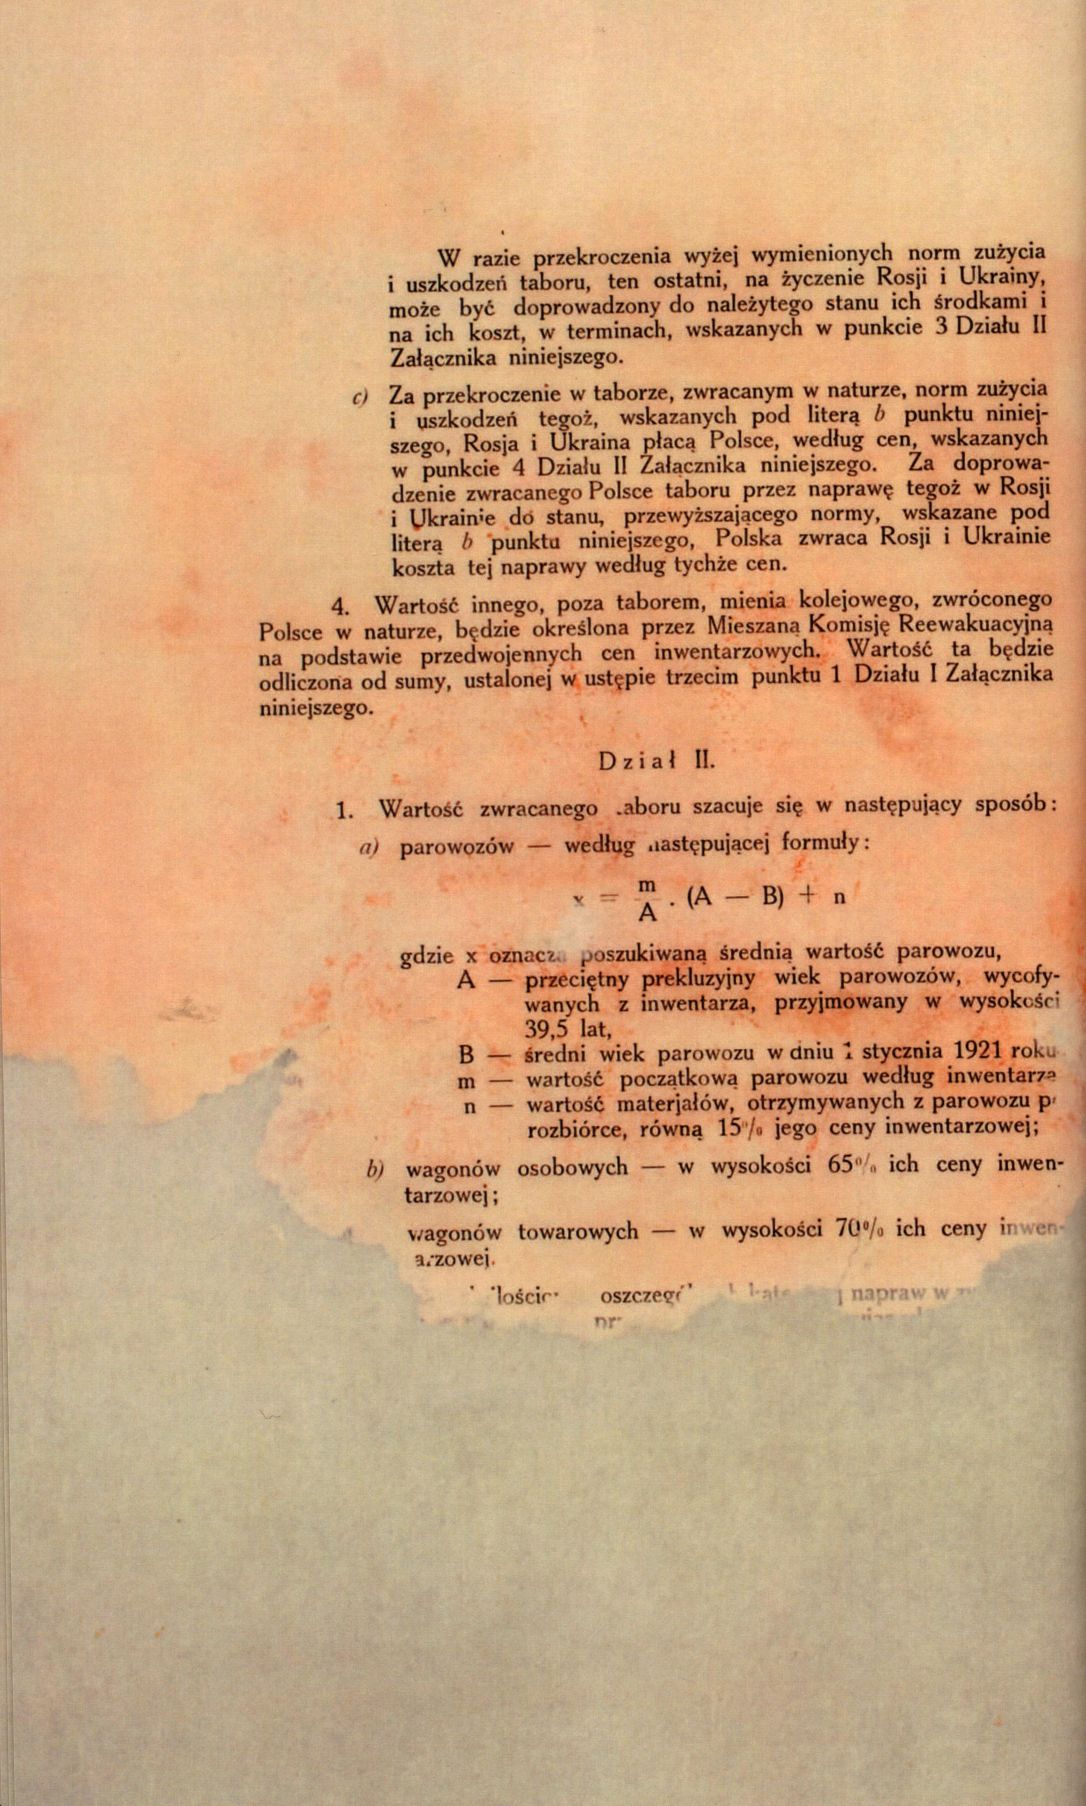 Traktat Pokoju między Polską a Rosją i Ukrainą podpisany w Rydze dnia 18 marca 1921 roku, s. 29, MSZ, sygn. 6739.